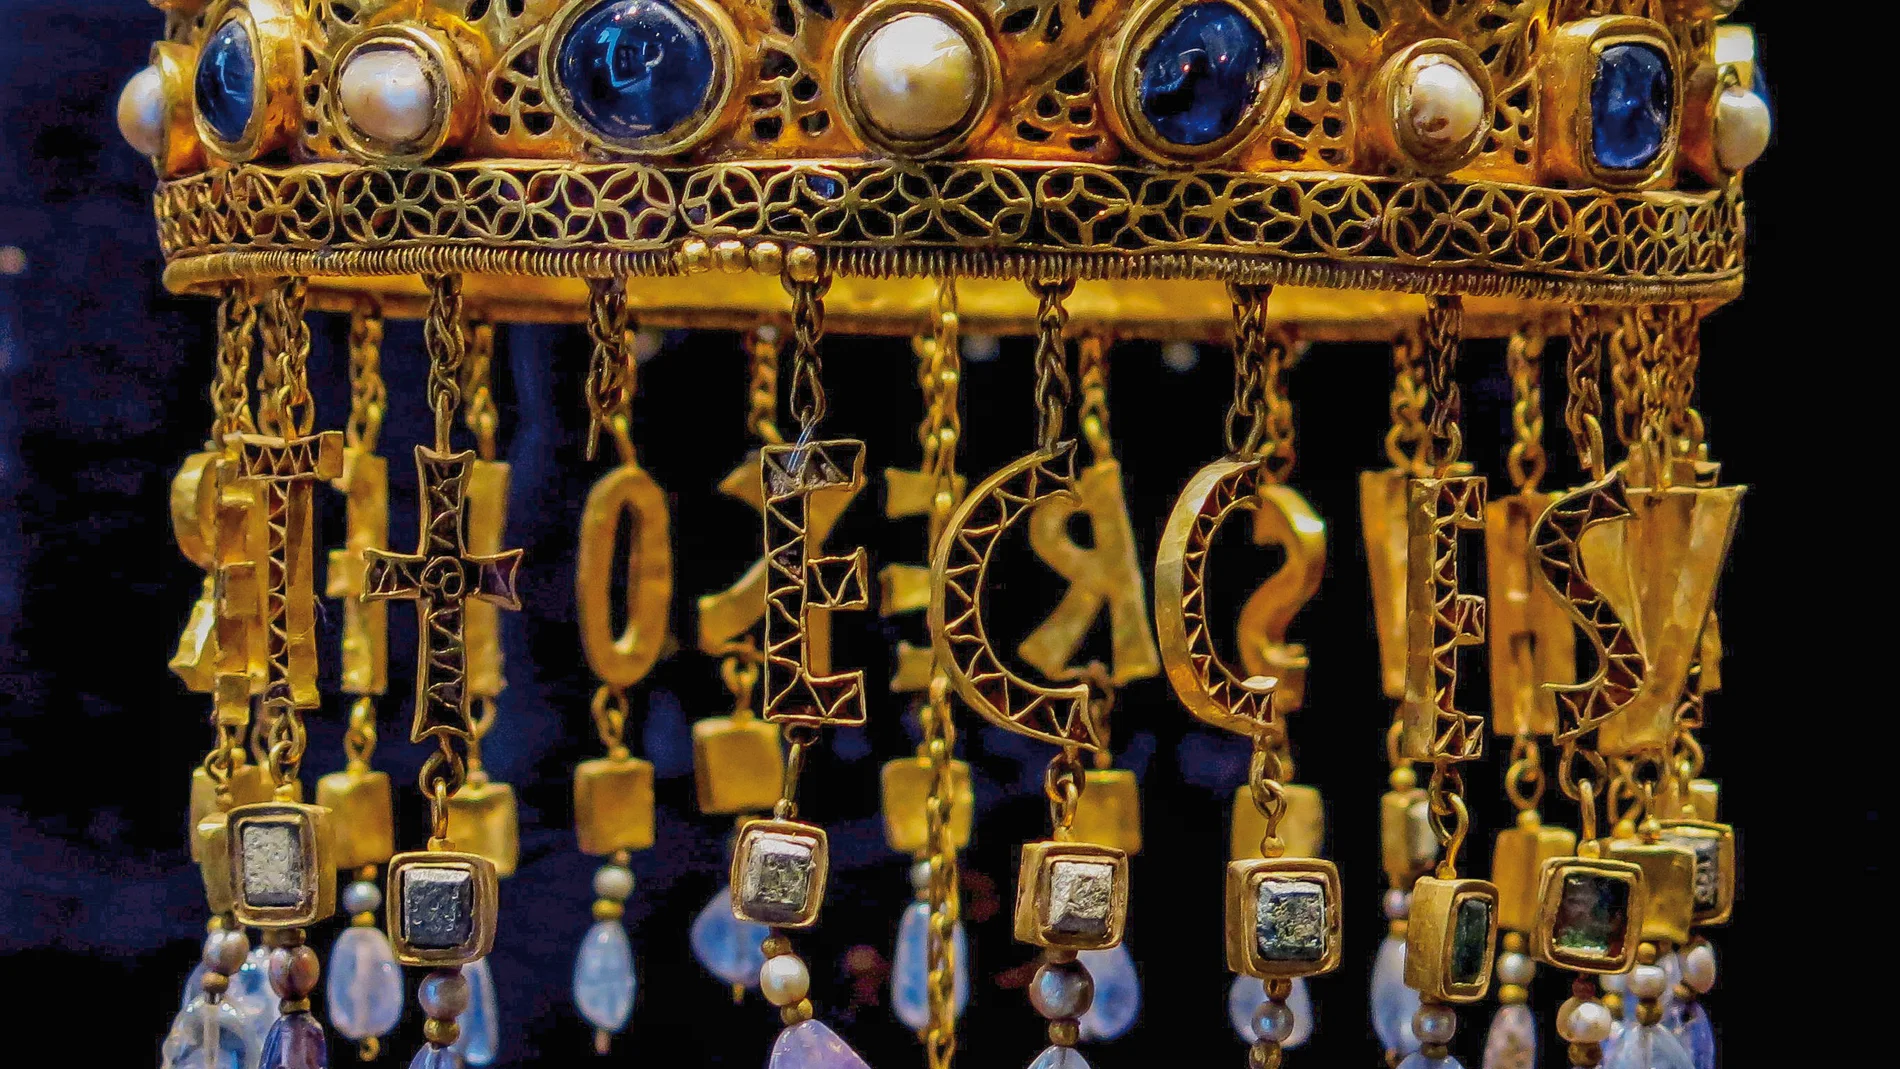 Cuerpo central de la archiconocida corona votiva de Recesvinto (reg. 653-672), del siglo VII, soberbio ejemplo de la orfebrería visigoda, elaborada en oro y piedras preciosas